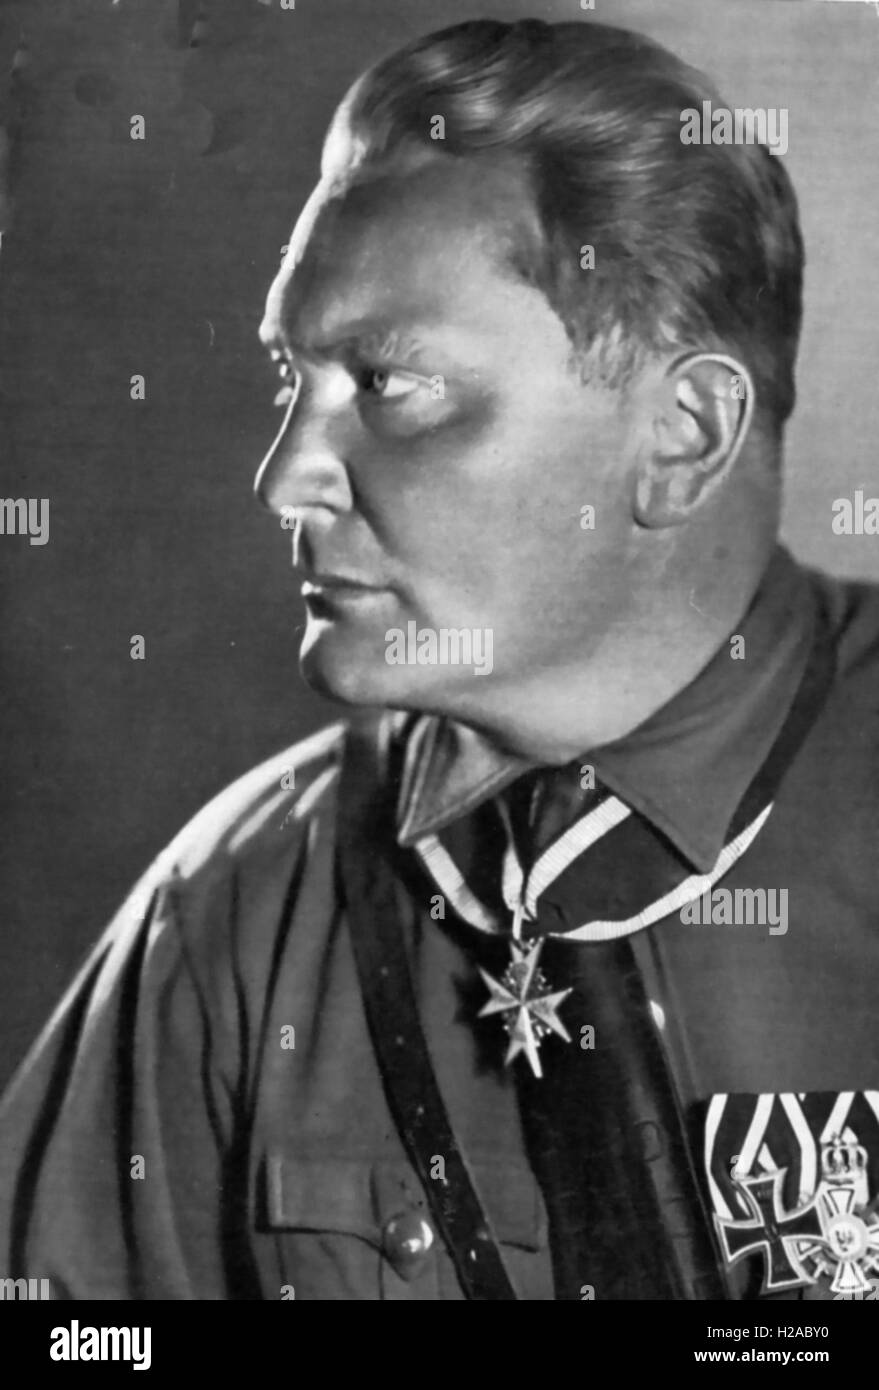 HERMANN GOERING (1893-1946) pilote de chasse ALLEMAND DE LA PREMIÈRE GUERRE MONDIALE et chef militaire nazie en 1932. Il porte la médaille Pour le Mérite autour du cou Banque D'Images